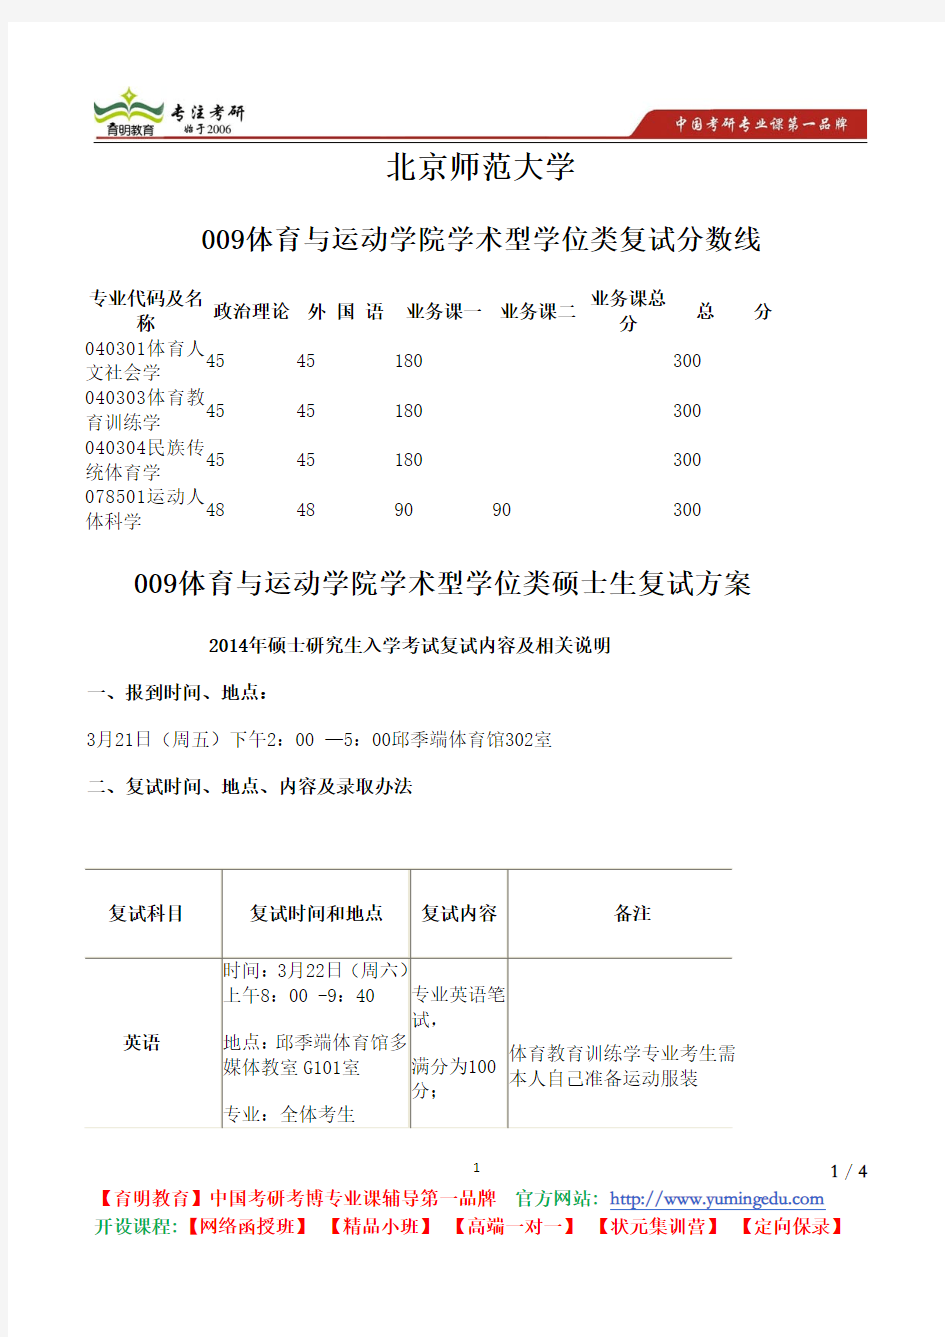 北京师范大学 009体育与运动学院 学术型 学位类 复试分数线